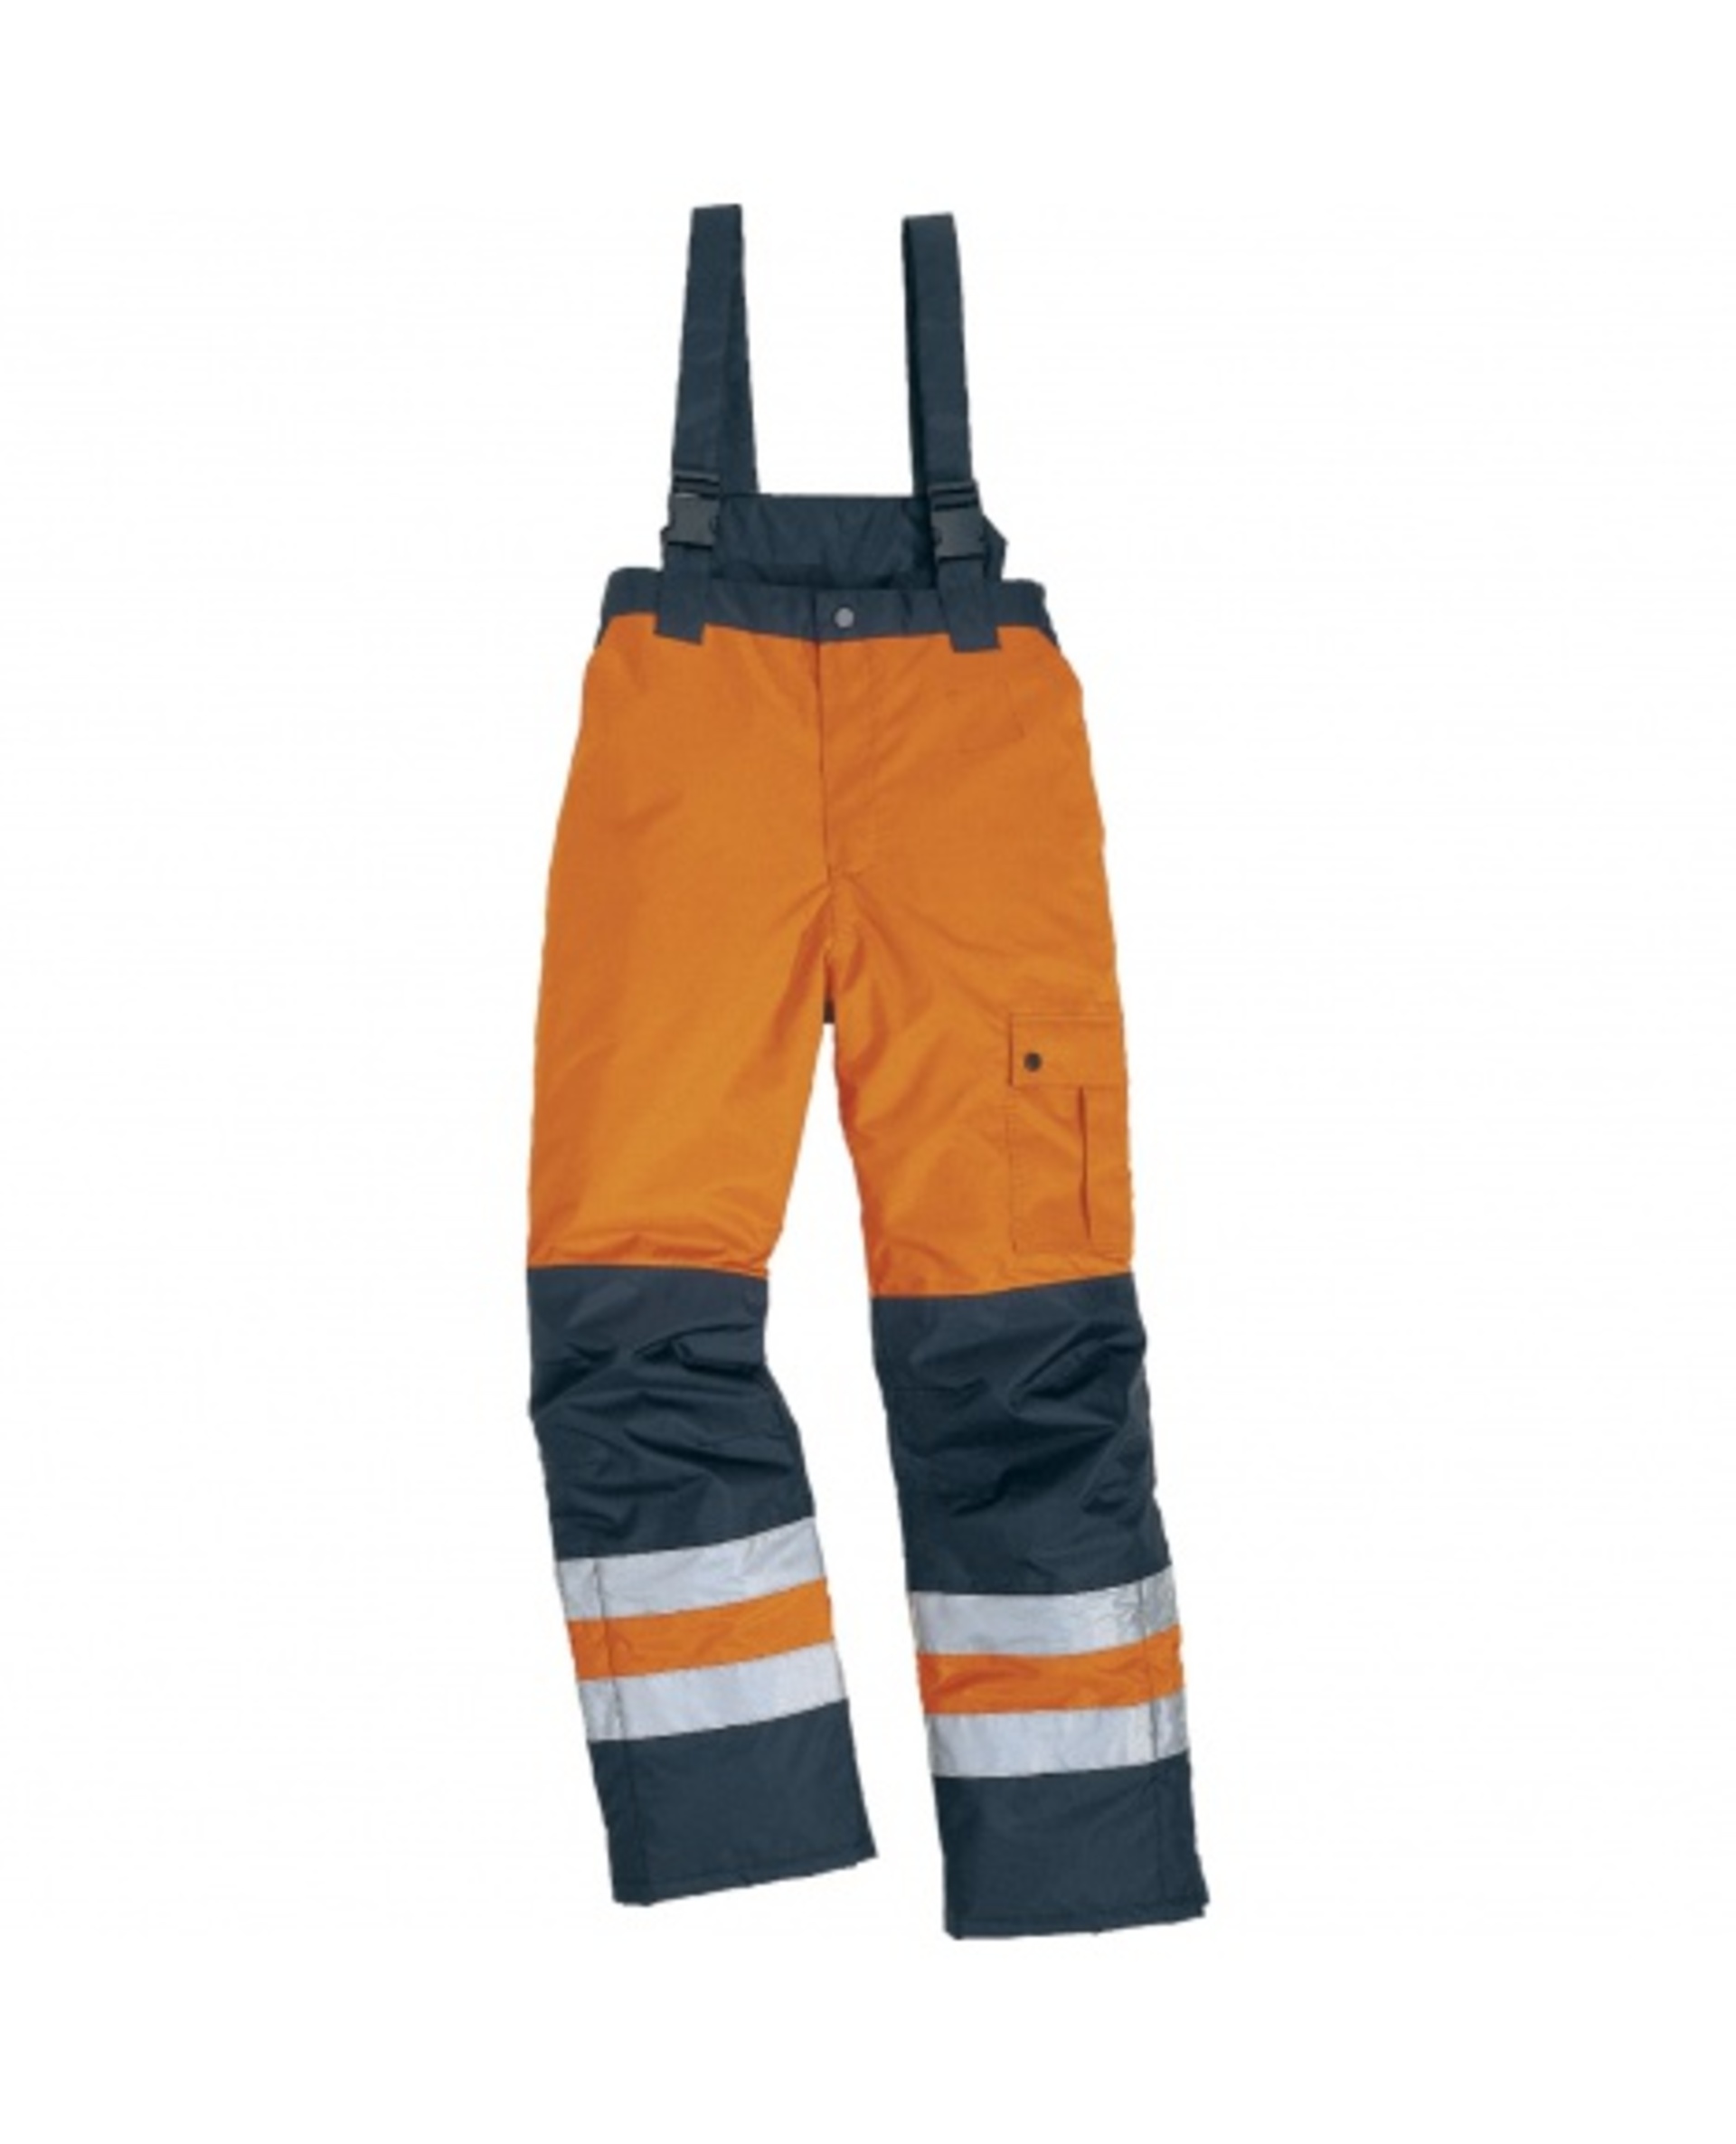 DeltaPlus FARGO HV Kalhoty reflexní oranžová/námořnická modrá S